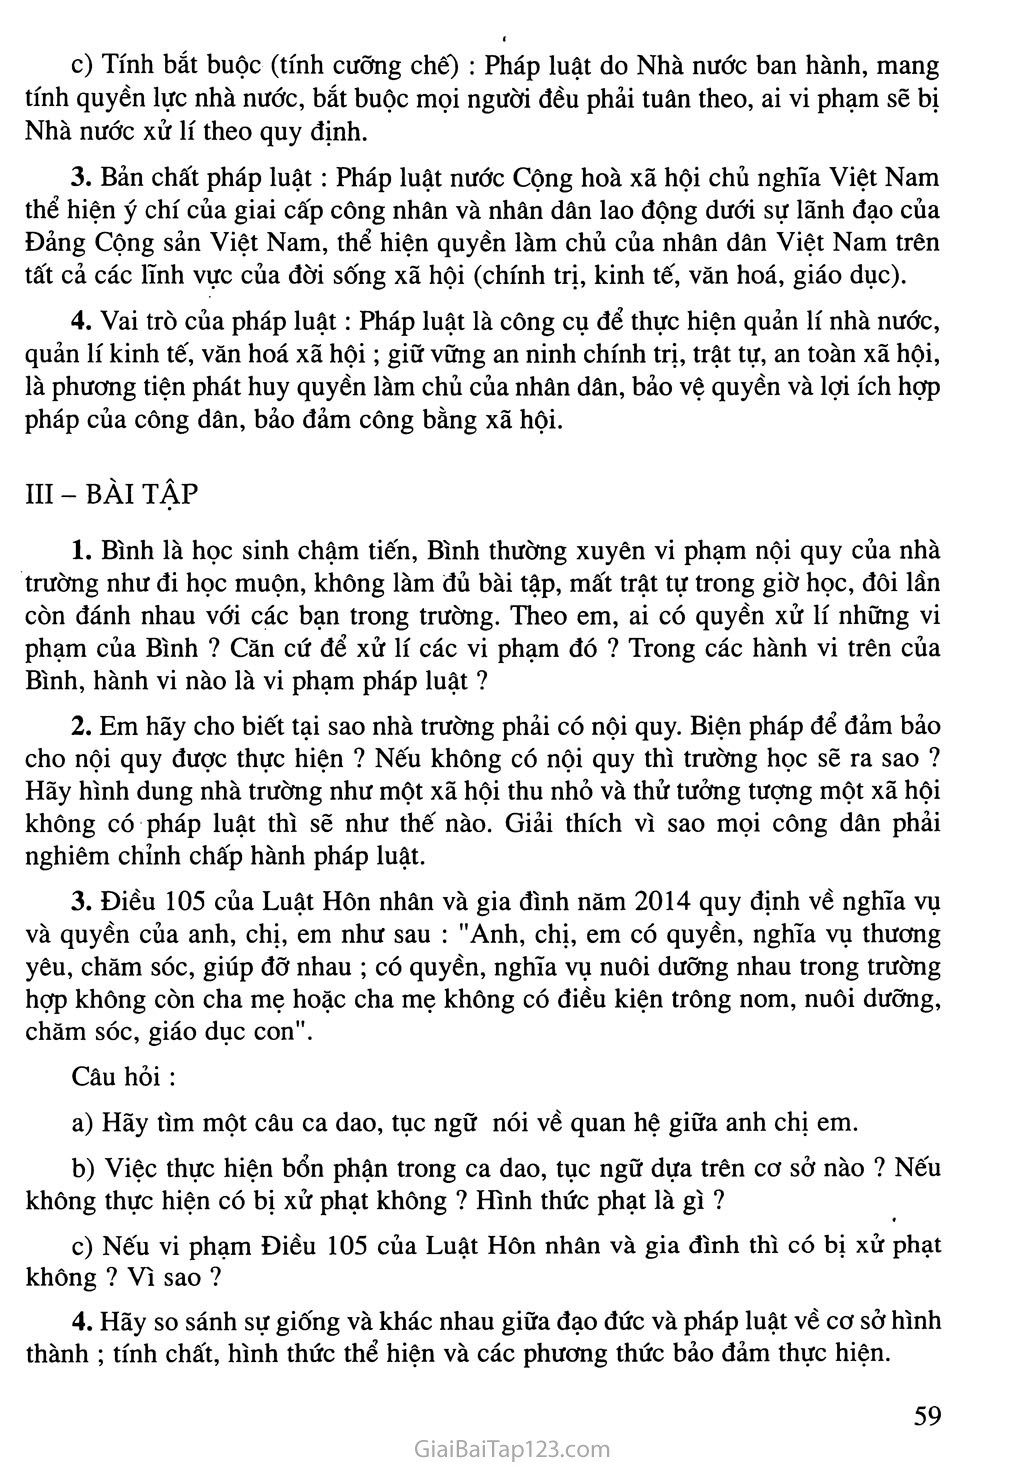 Bài 21: Pháp luật nước Cộng hoà xã hội chủ nghĩa Việt Nam trang 3